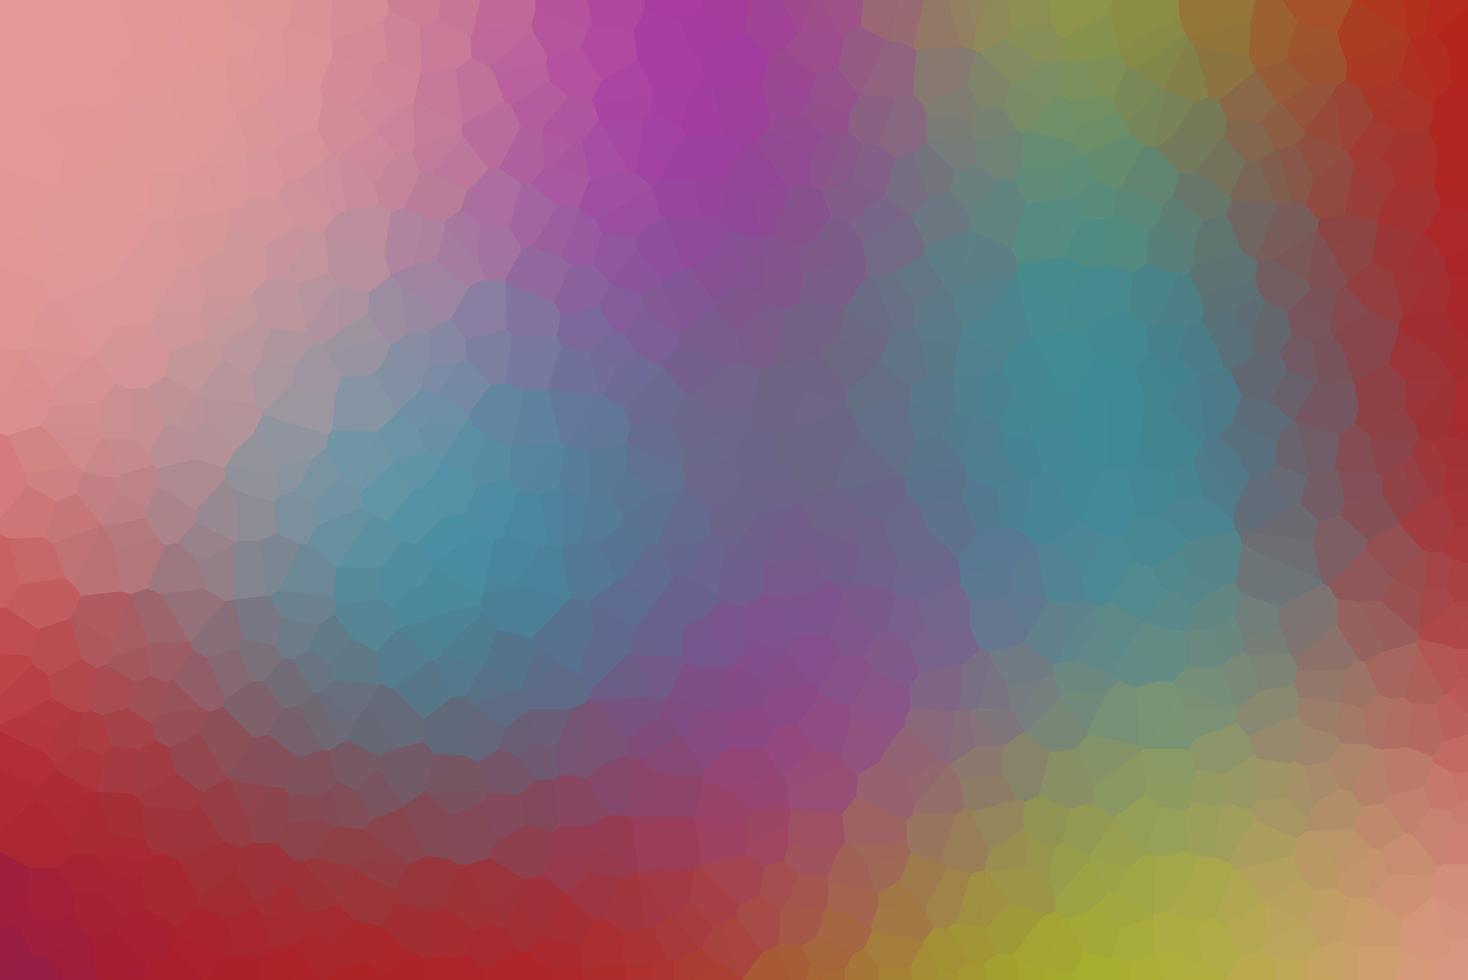 Với ý tưởng về nghệ thuật pop và các màu sắc chủ đạo, hình ảnh Blurred pop abstract background sẽ khiến bạn trầm trồ ngay từ lần đầu tiên nhìn thấy. Bạn sẽ được trải nghiệm một không gian cực kỳ sáng tạo và độc đáo chỉ với một bức ảnh.